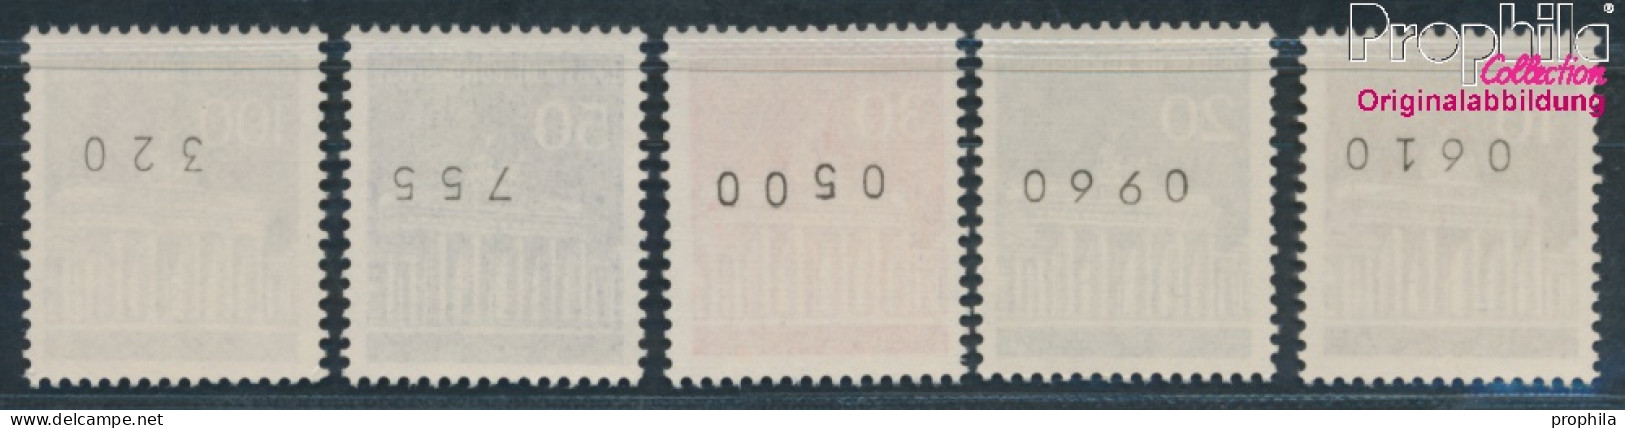 BRD 506w R-510w R Mit Zählnummer (kpl.) Matte Gummierung Postfrisch 1966 Brandenburger Tor (10348149 - Neufs